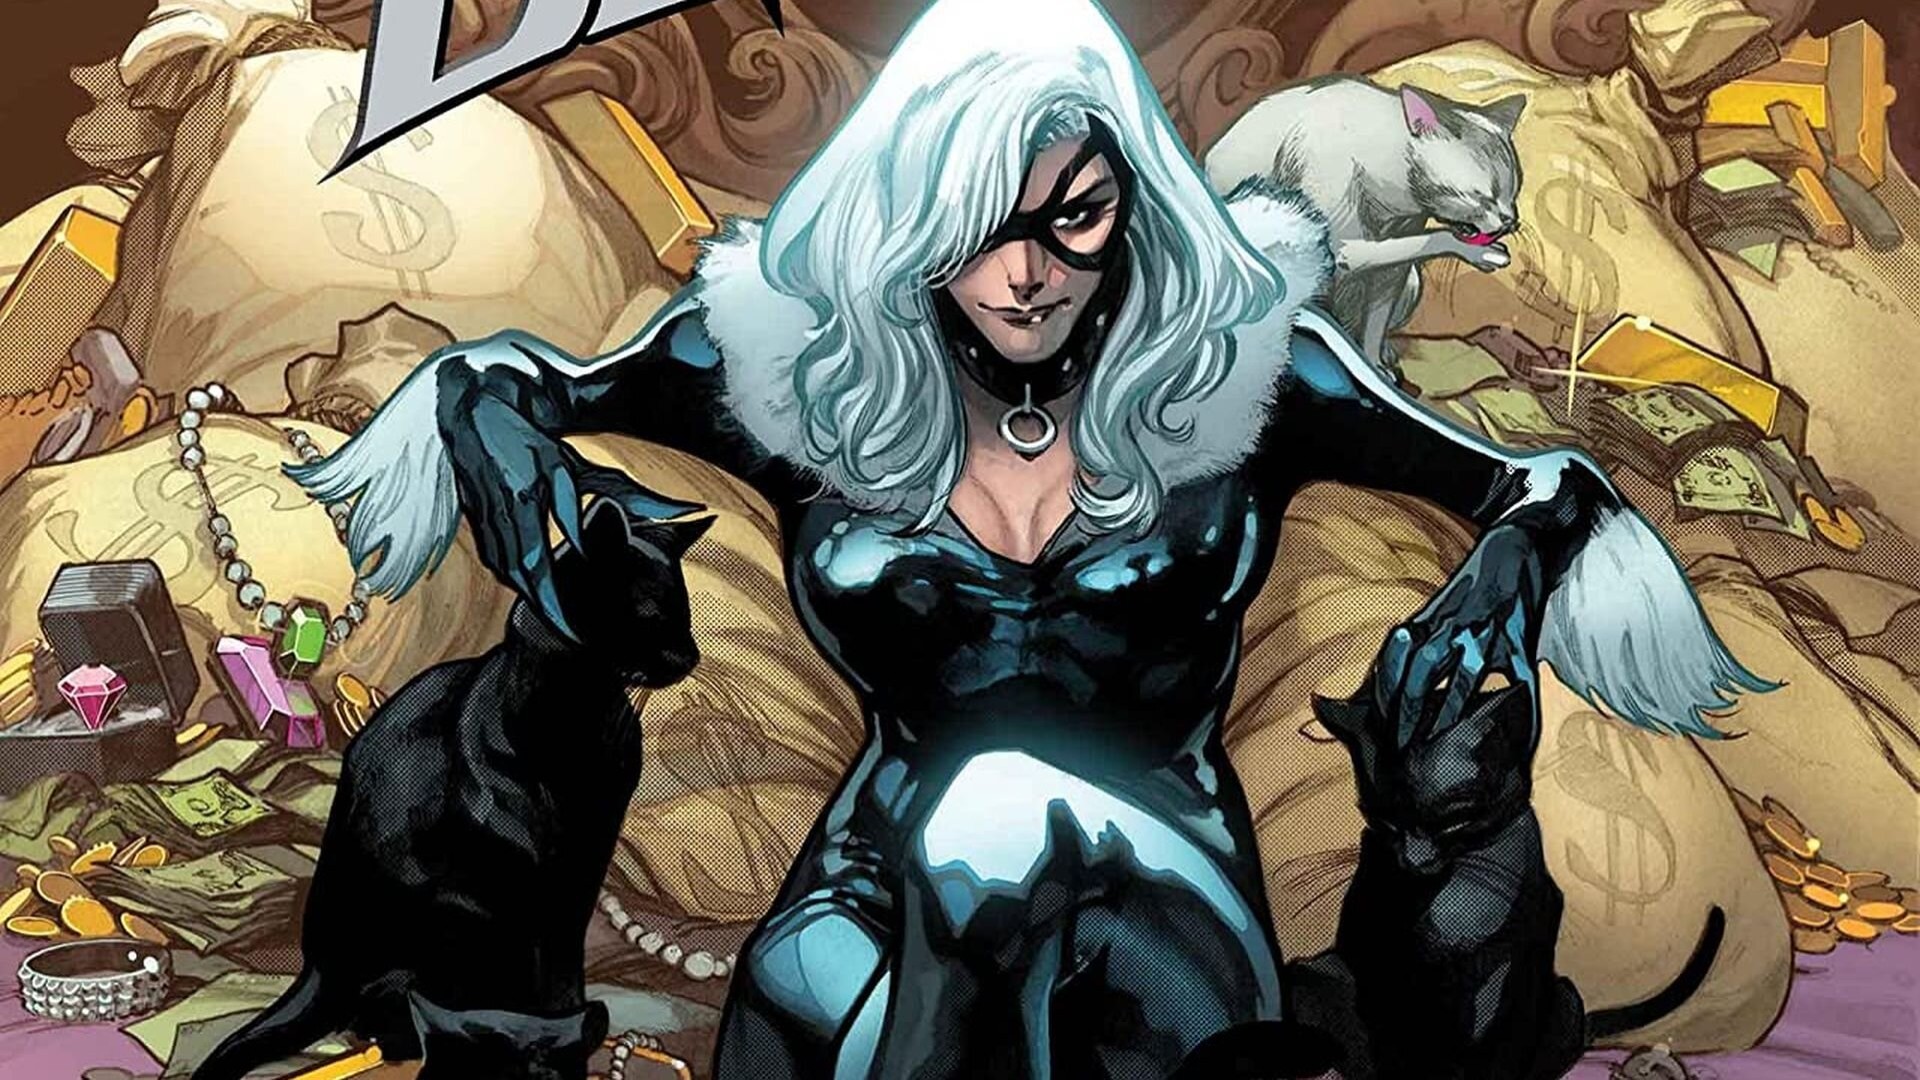 Black se senta em uma cadeira em uma história em quadrinhos da Marvel.